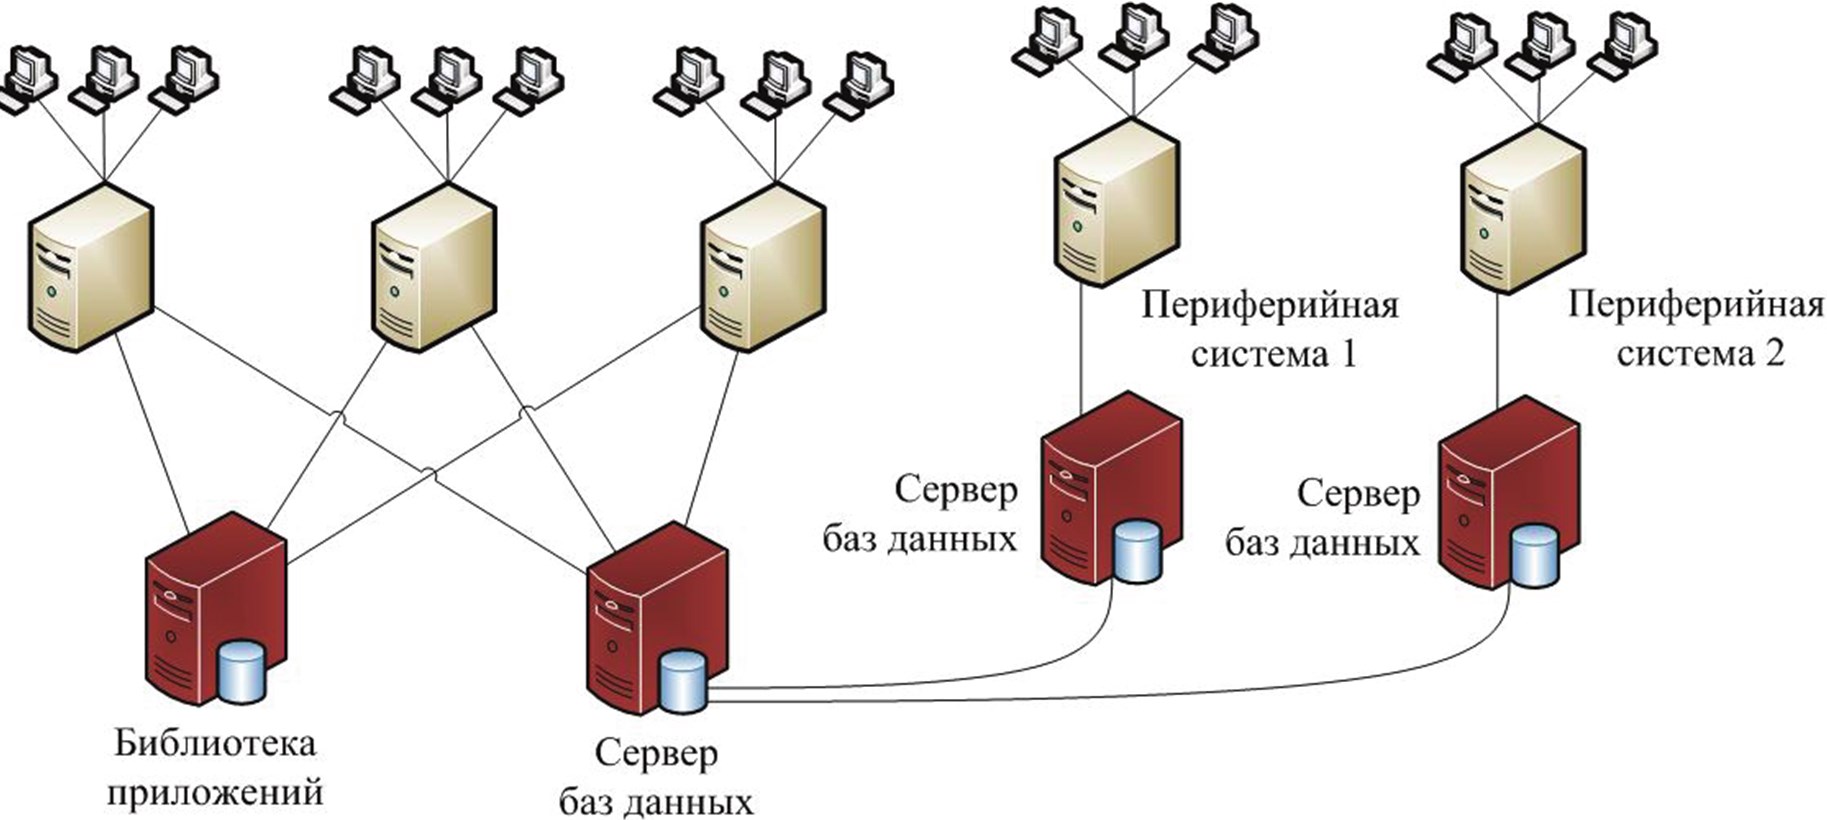 Есть связь с сервером. Сервер базы данных + сервер приложений. Схема сервера базы данных. Сервер БД схема. Информационная система с сервером базы данных.